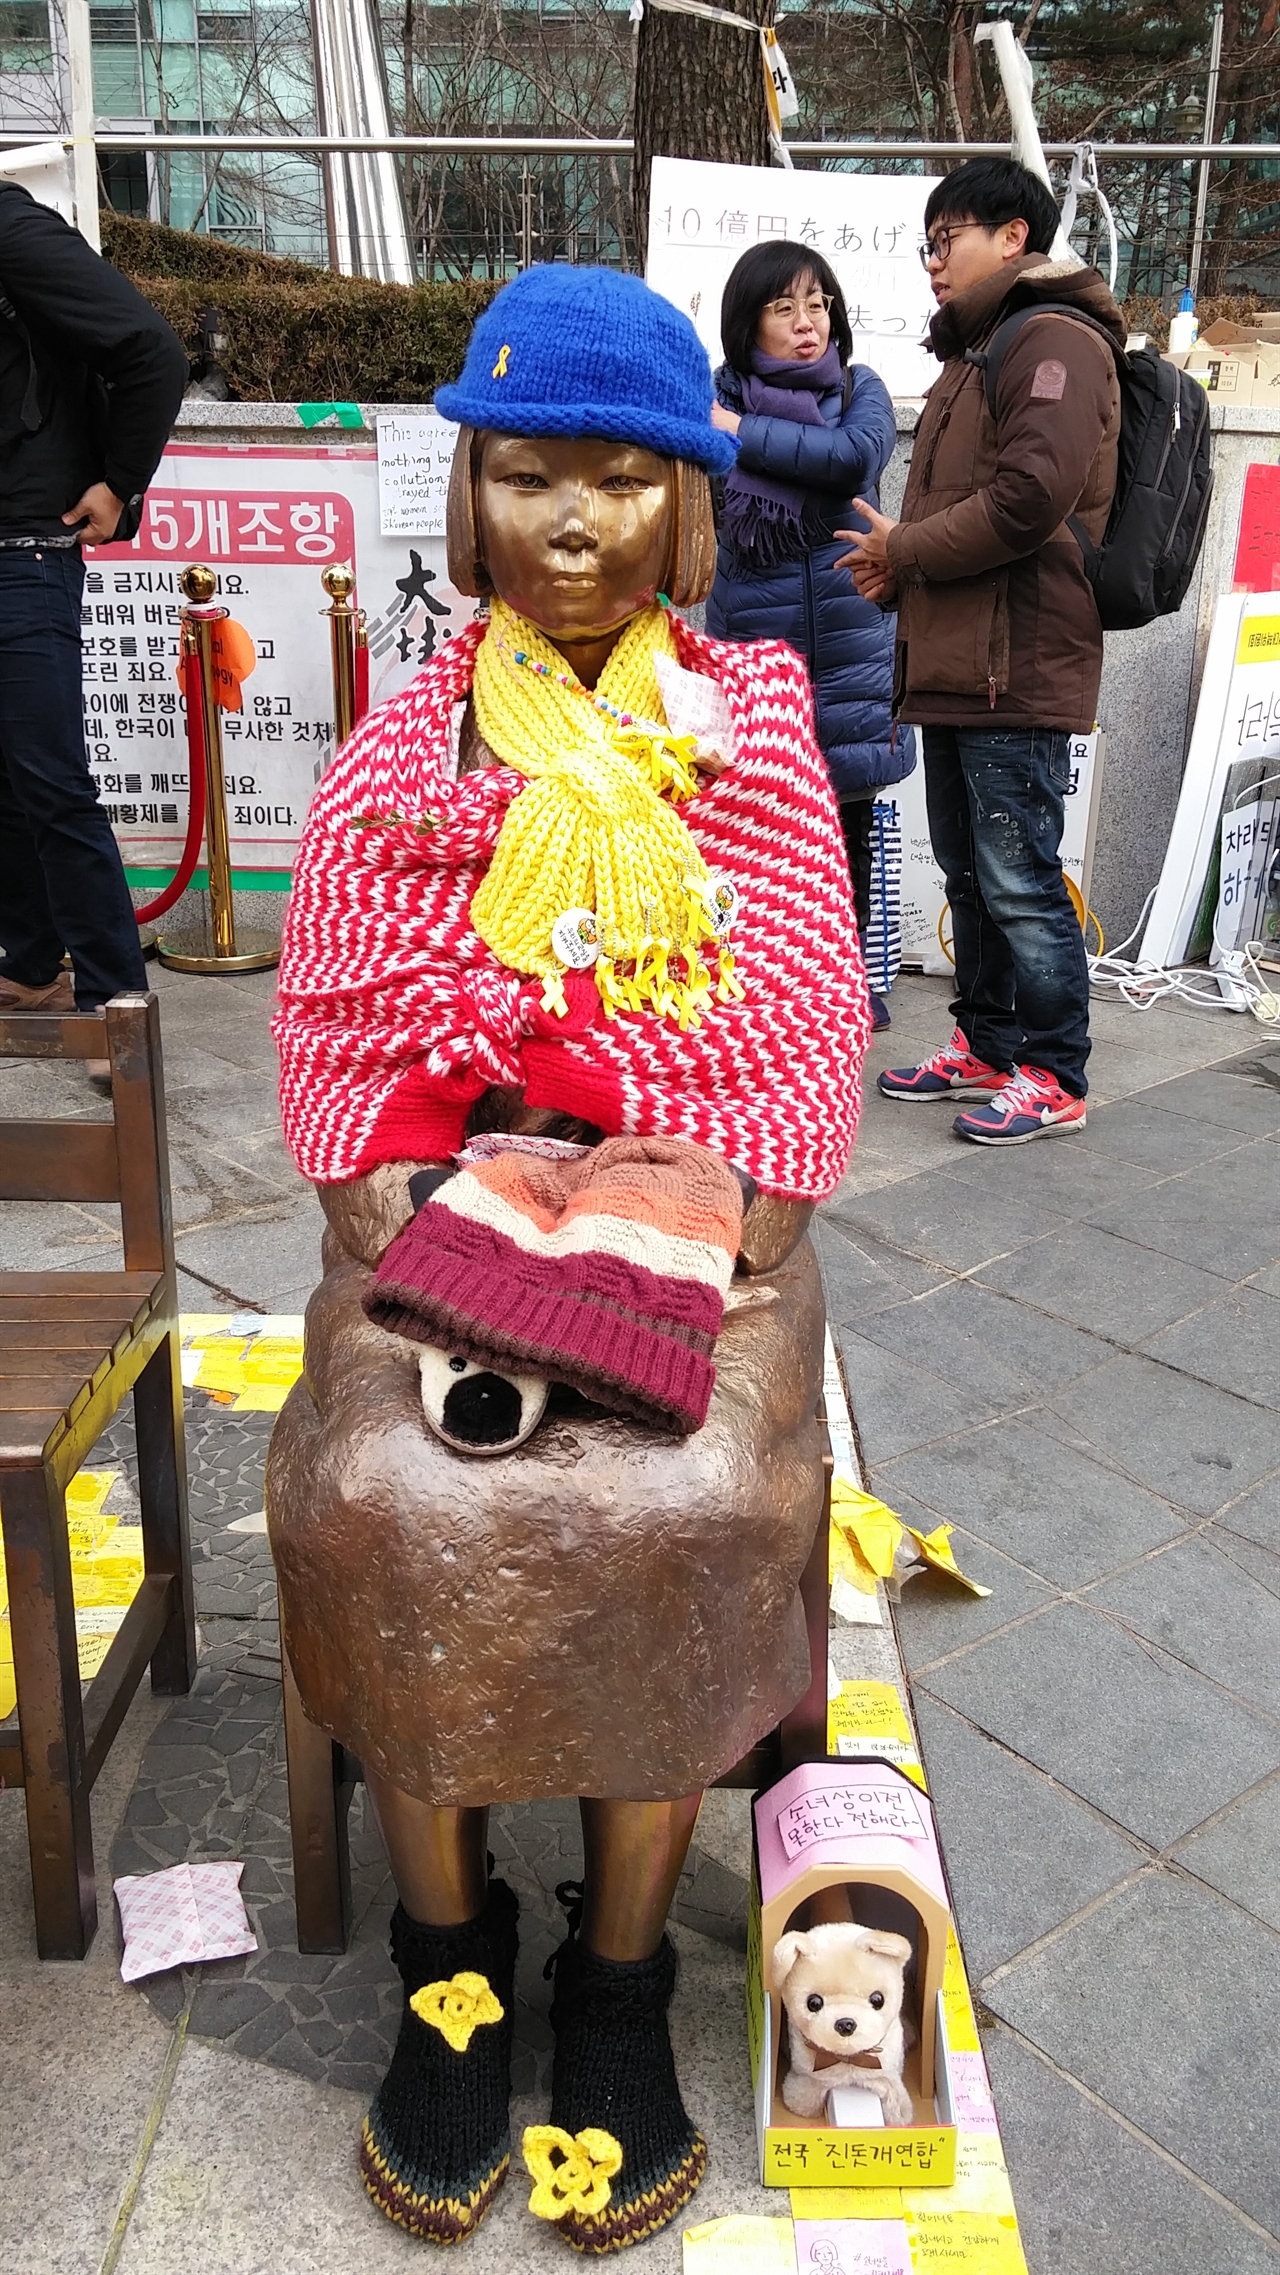 일본대사관 앞에 있는 소녀상. 